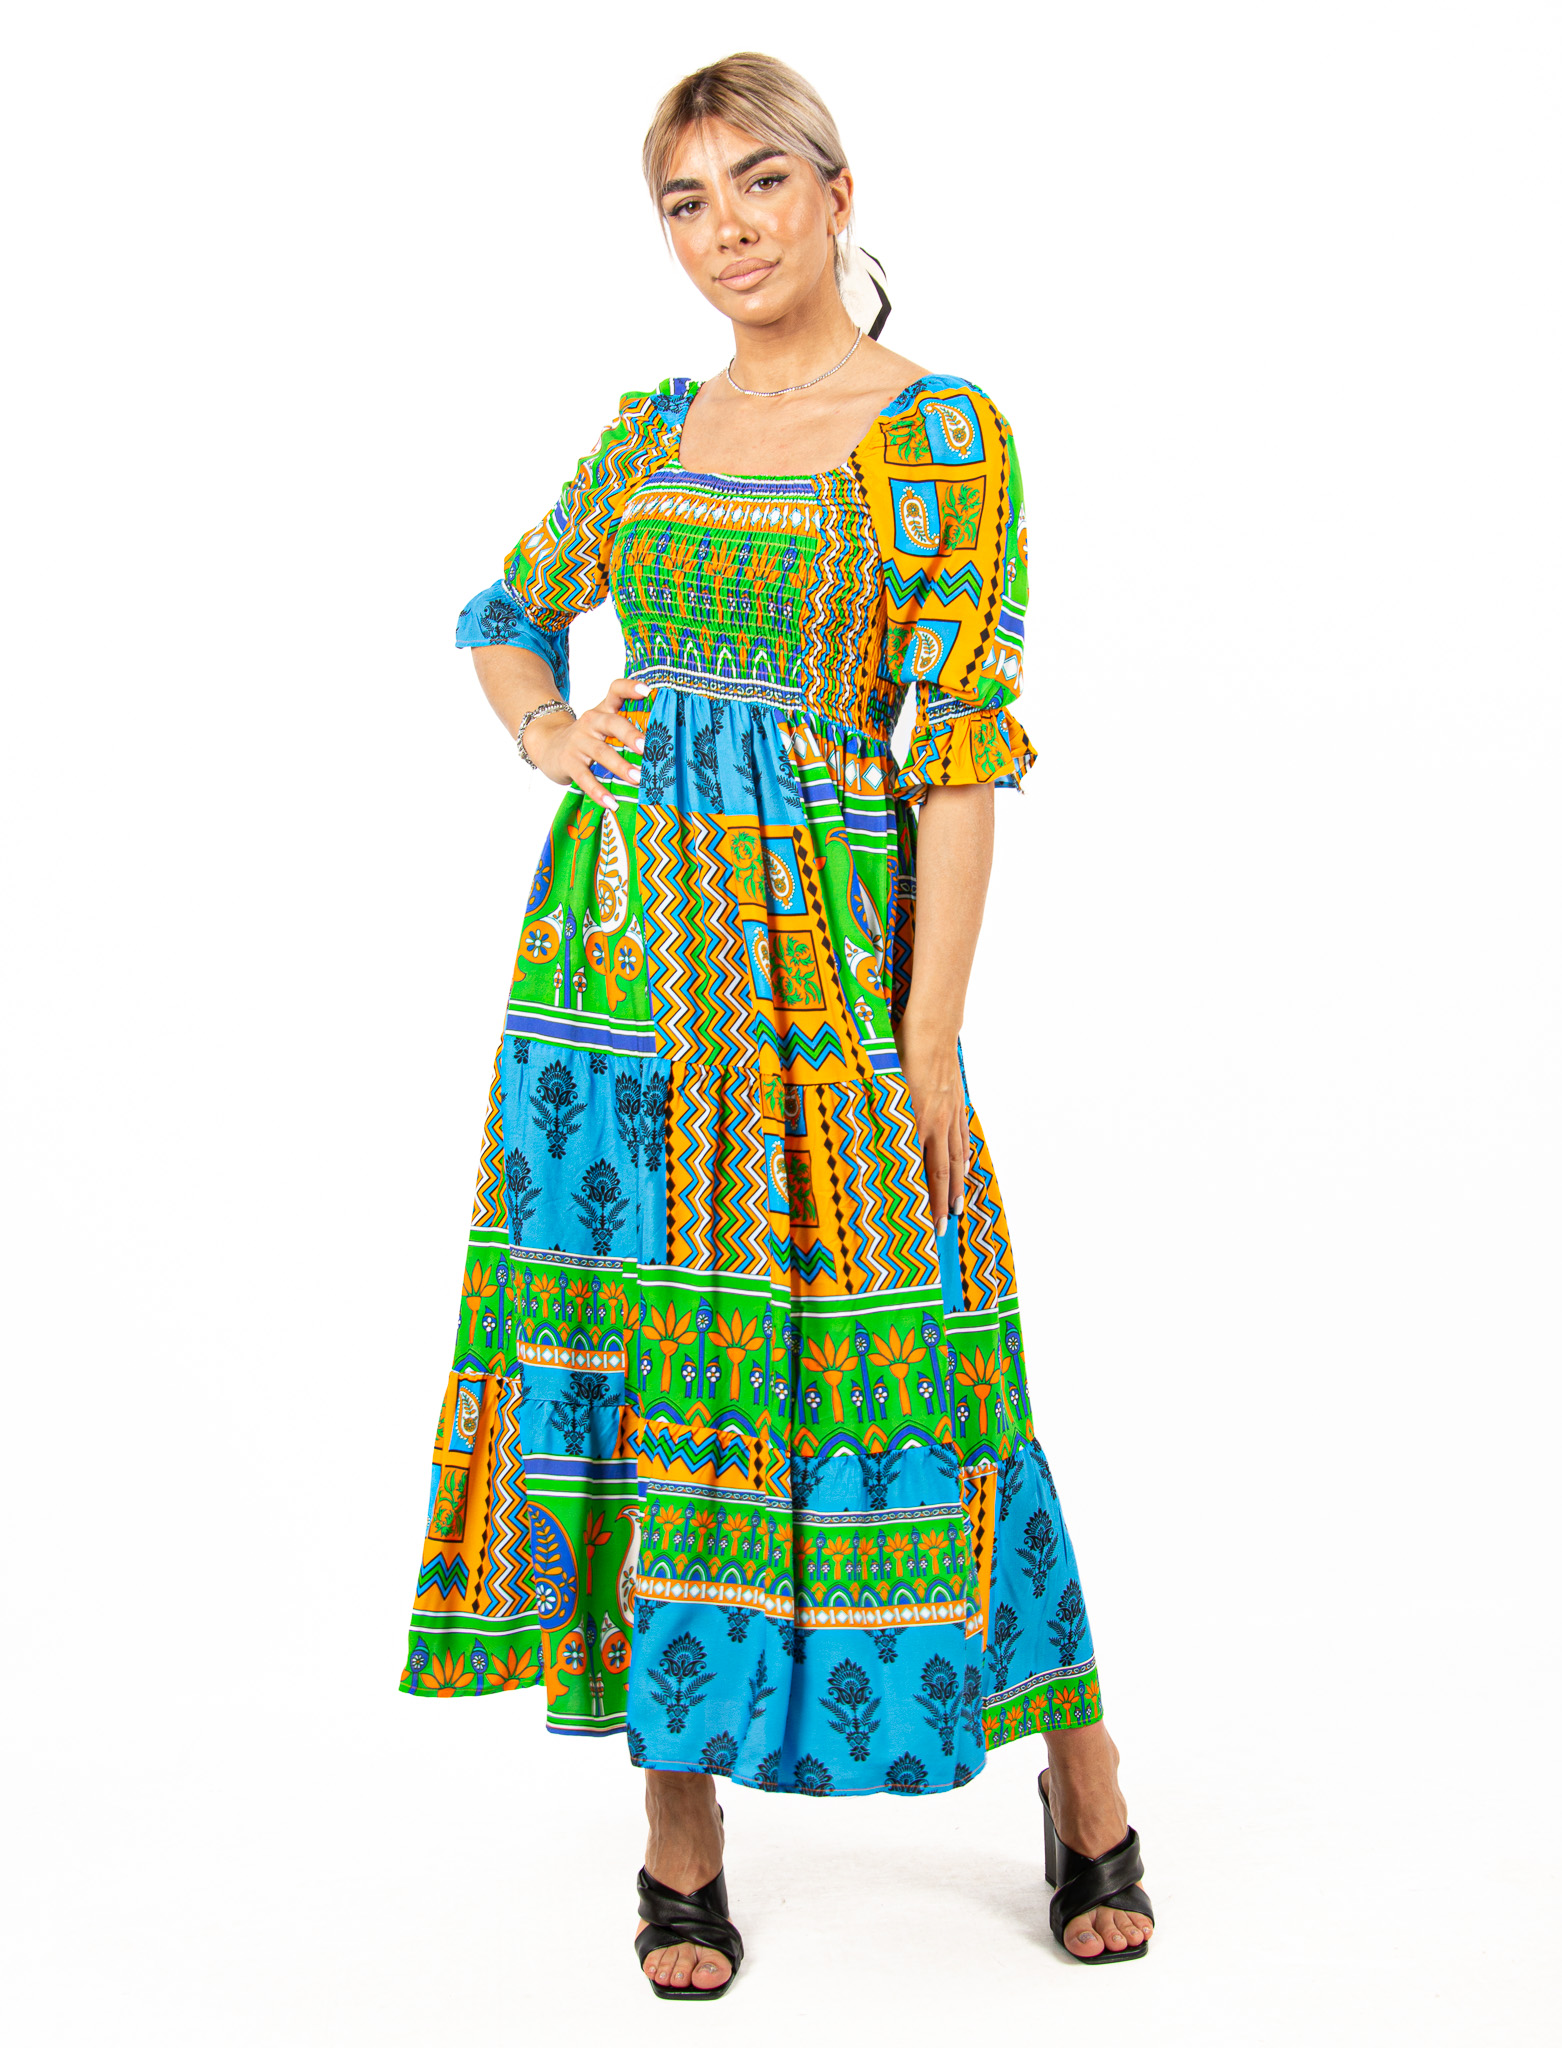 Φόρεμα Boho Σφηκοφωλιά Πράσινο-Γαλάζιο | EllenBoutique